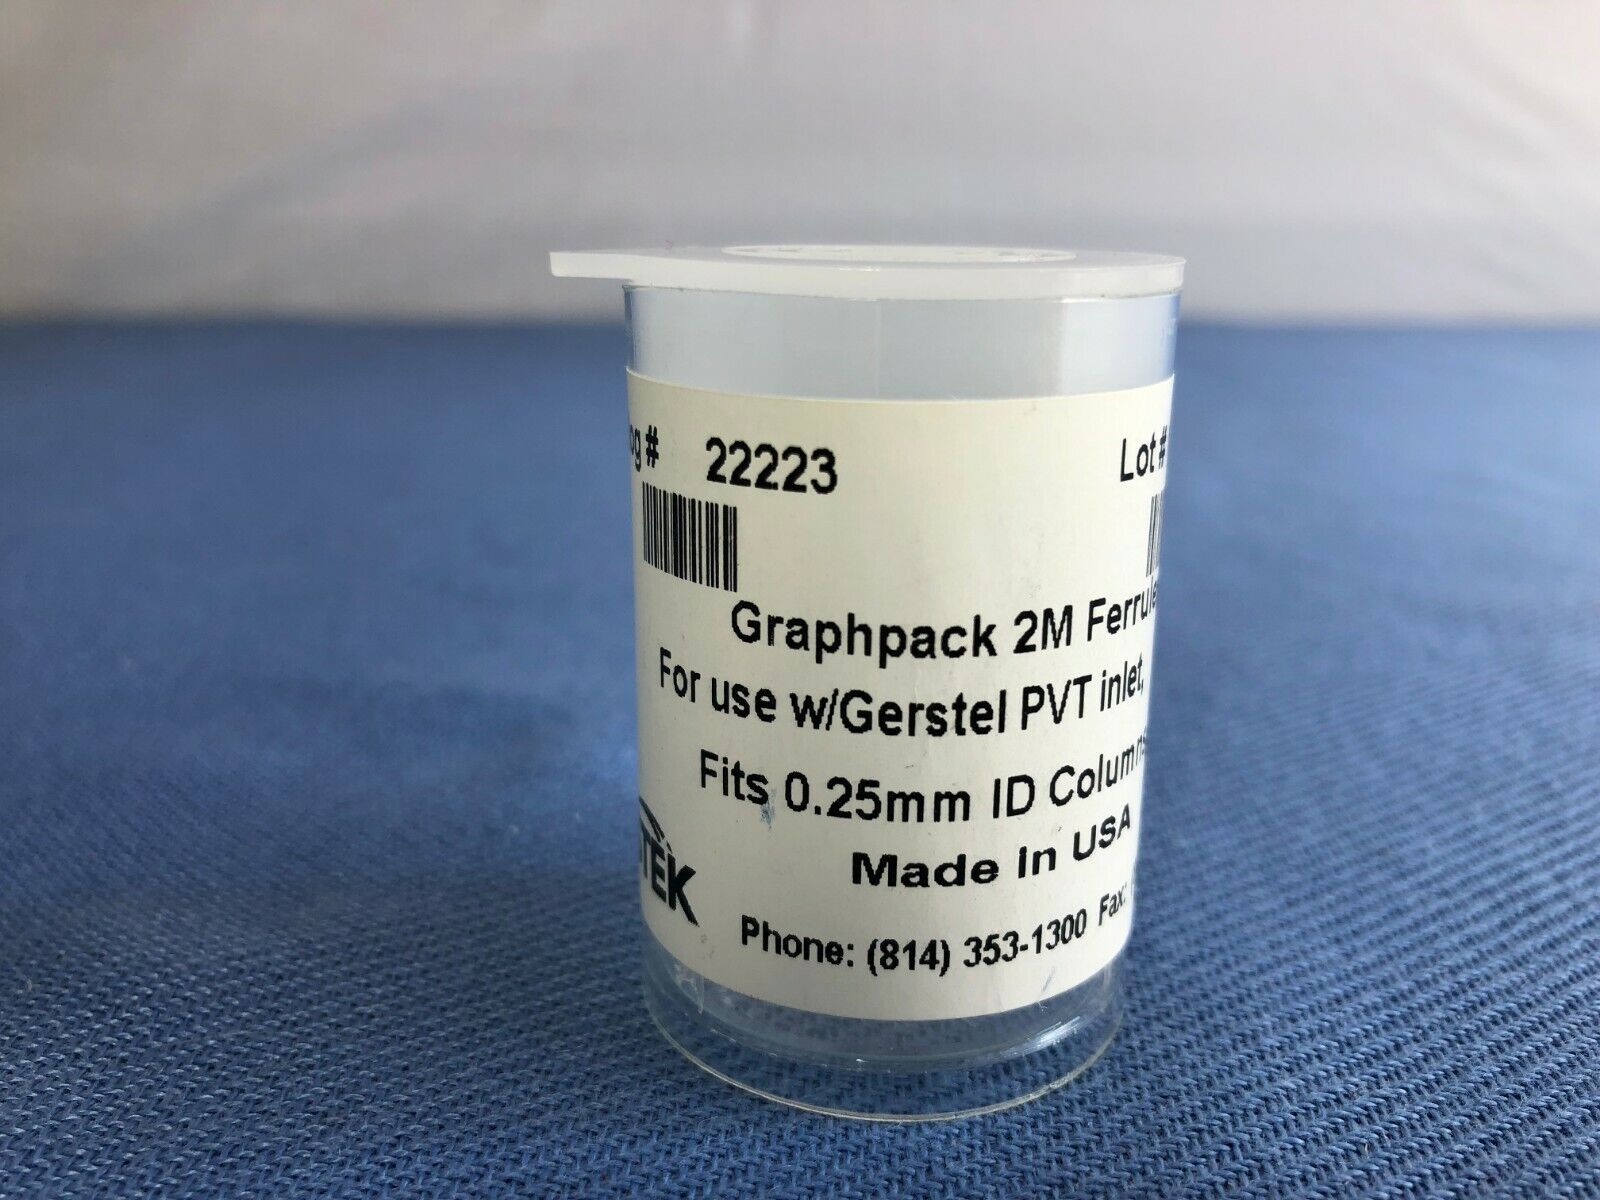 Graphpack 2M Ferrules, fits 0.25mm ID columns, 10 pack 22223